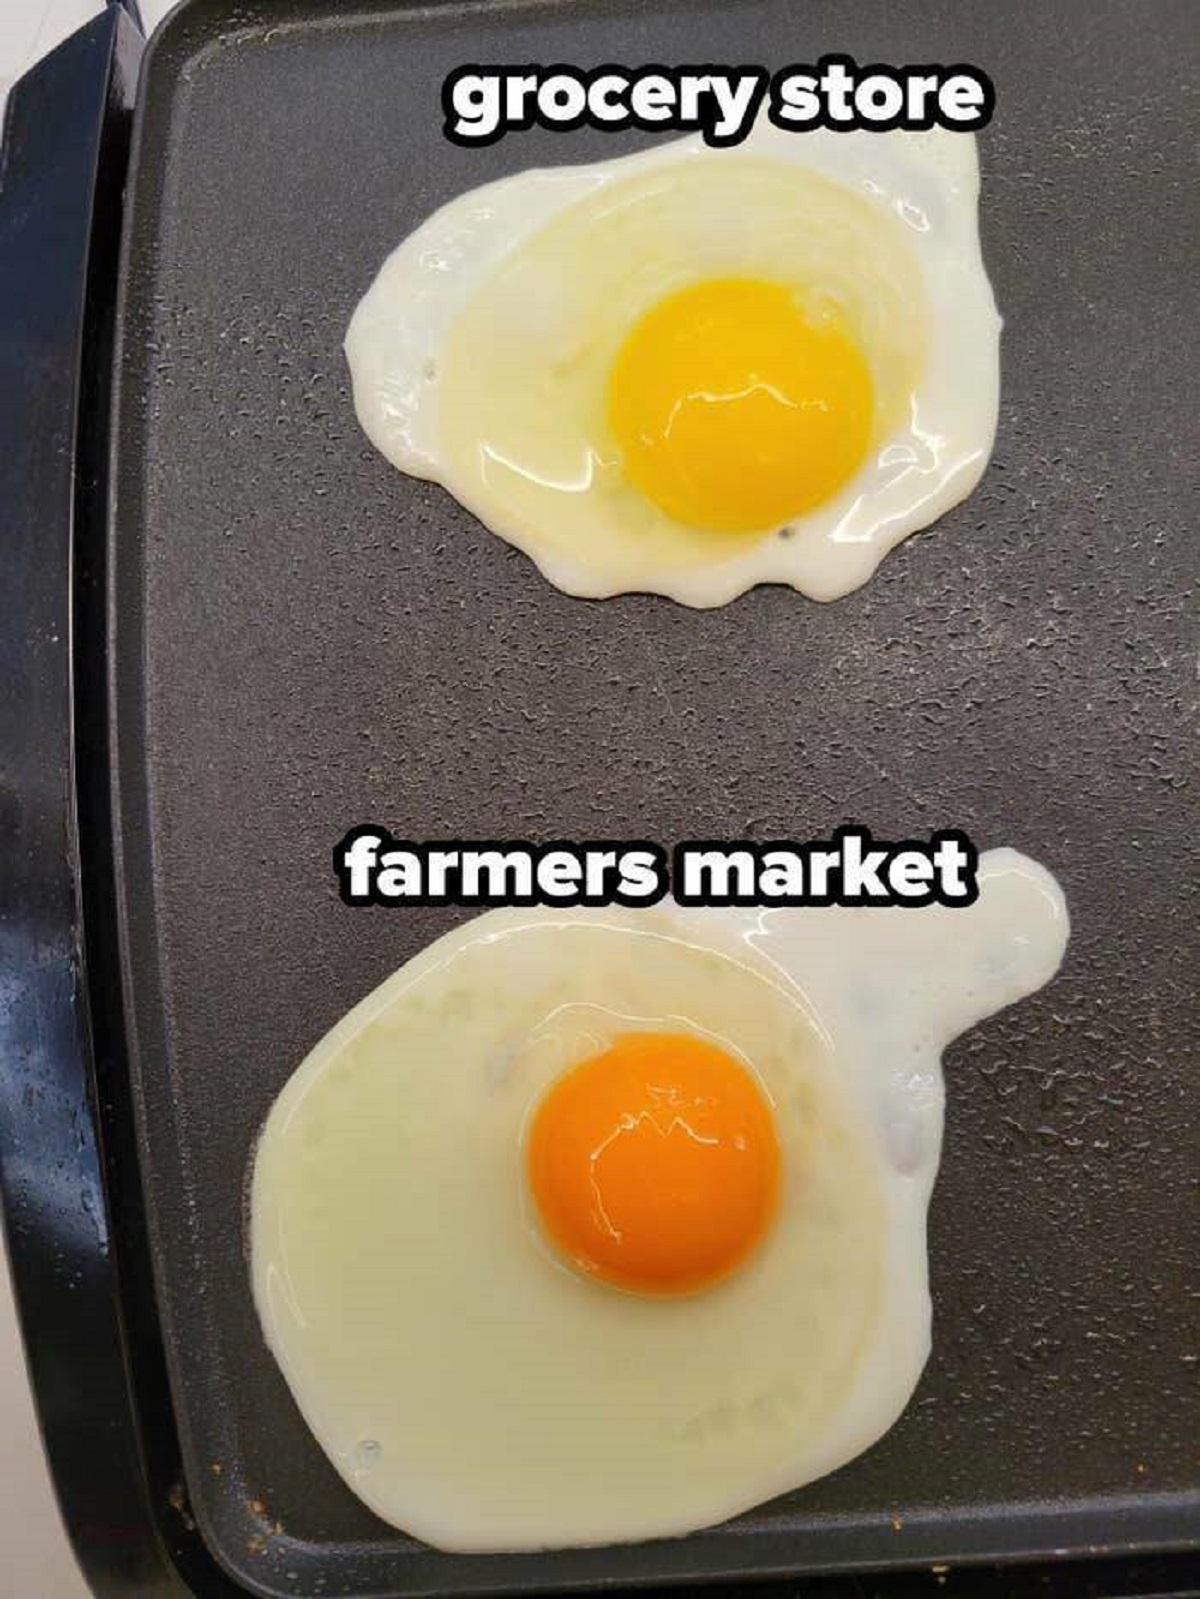 egg yolk - grocery store farmers market